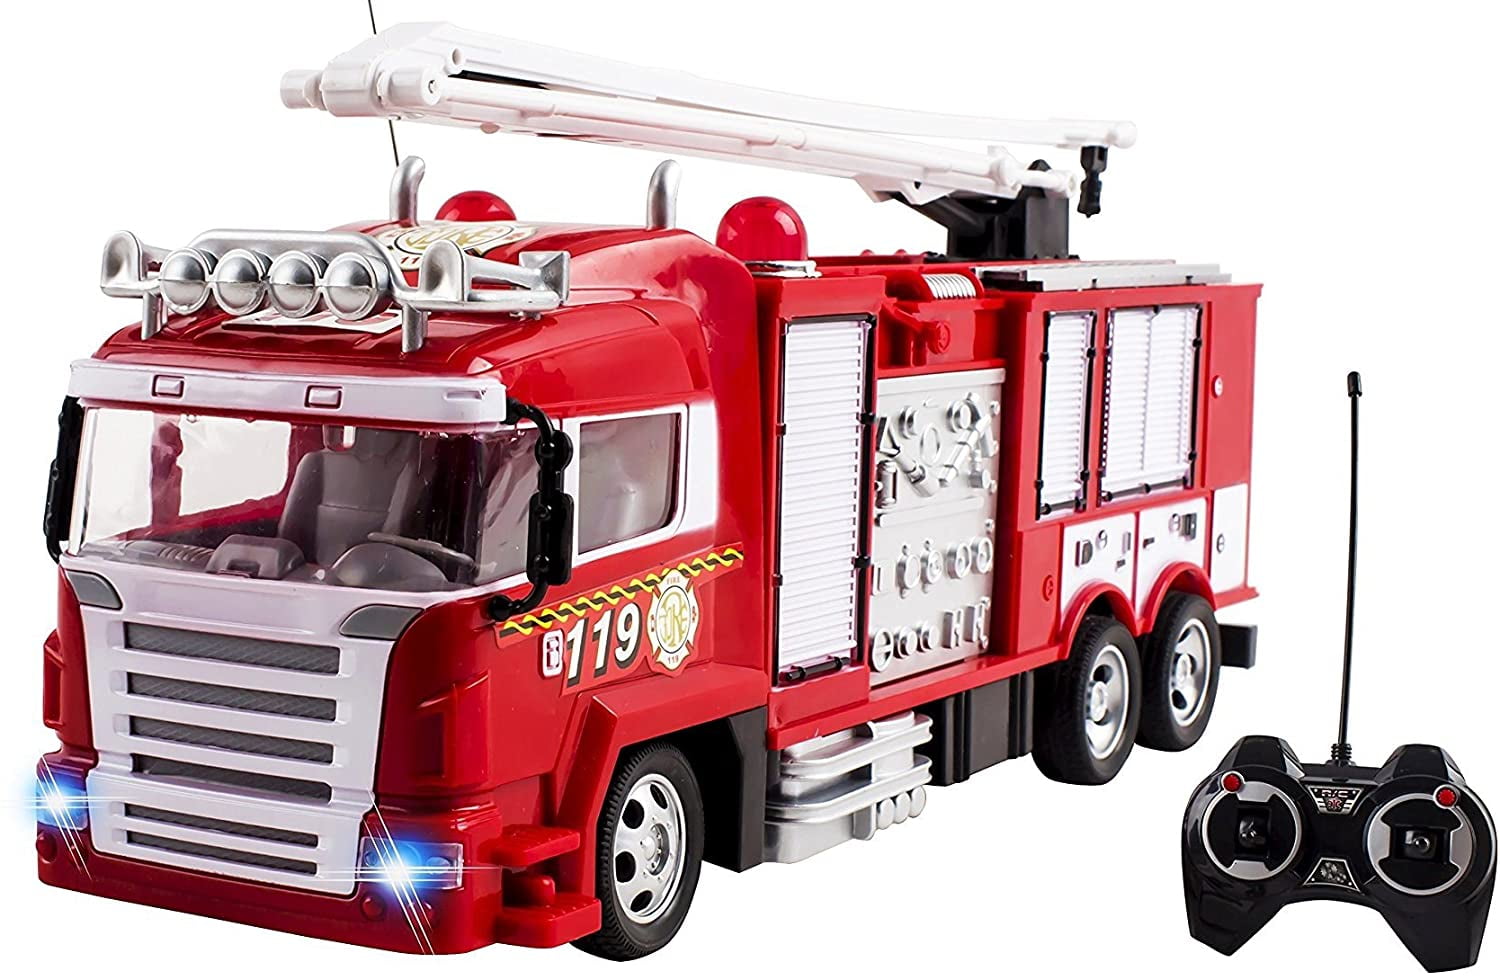 Купить игрушку пожарный. Fire Rescue пожарная машина на пульте управления. Радиоуправляемая пожарная машина Hobby engine Fire engine (0813). Игрушка пожарная машина Rescue Fire engine.